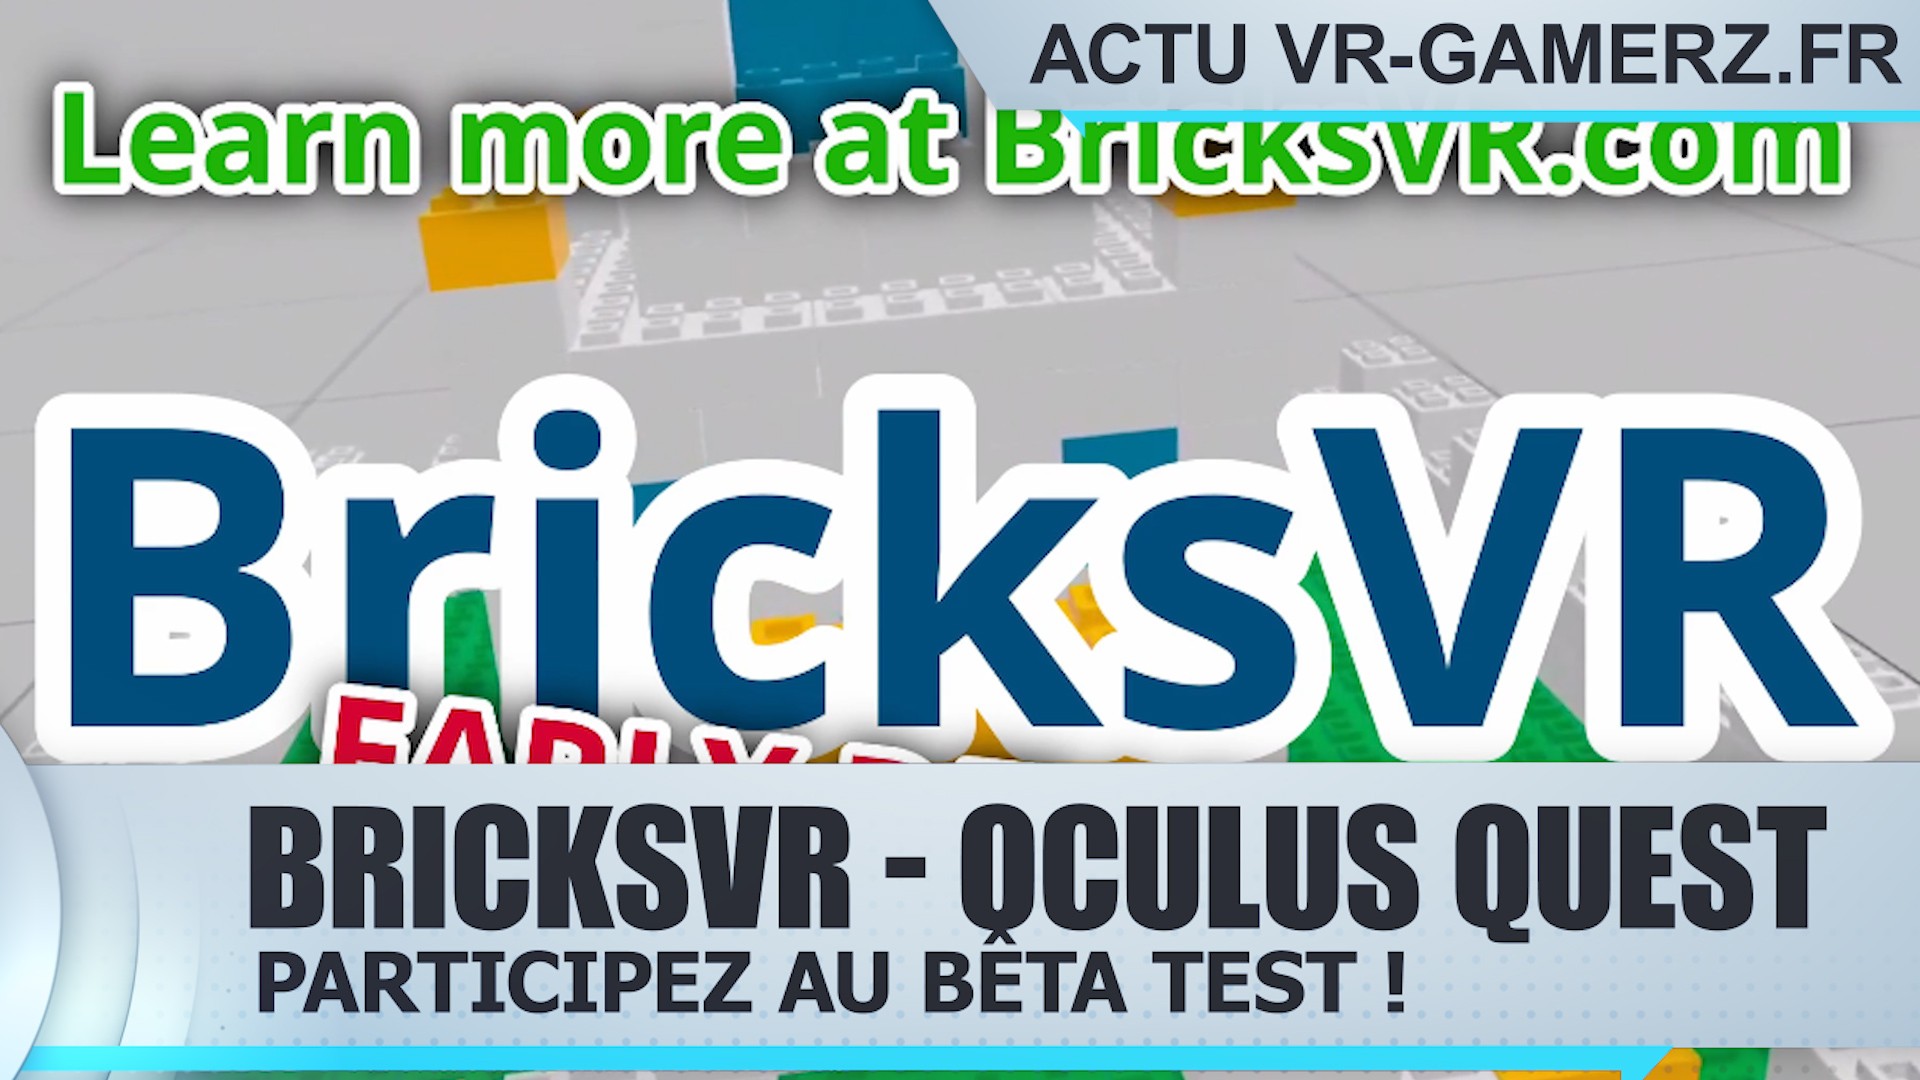 BricksVR Oculus quest : Participez à la bêta !